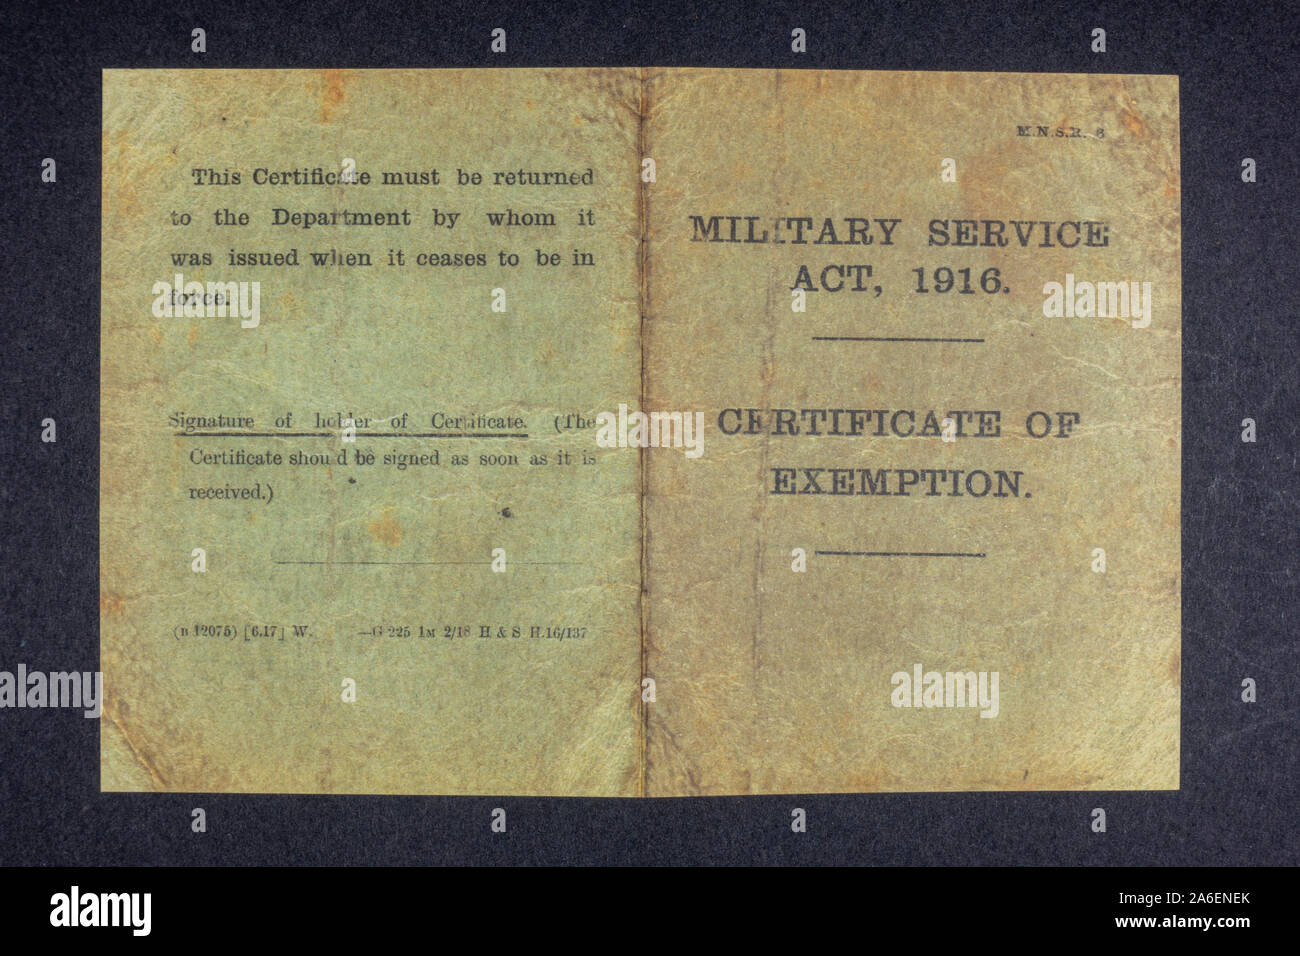 Certificat d'exemption, Loi sur le service militaire, 1916 (réplique) page avant et arrière, un article de souvenirs de l'ère de la première Guerre mondiale. Banque D'Images